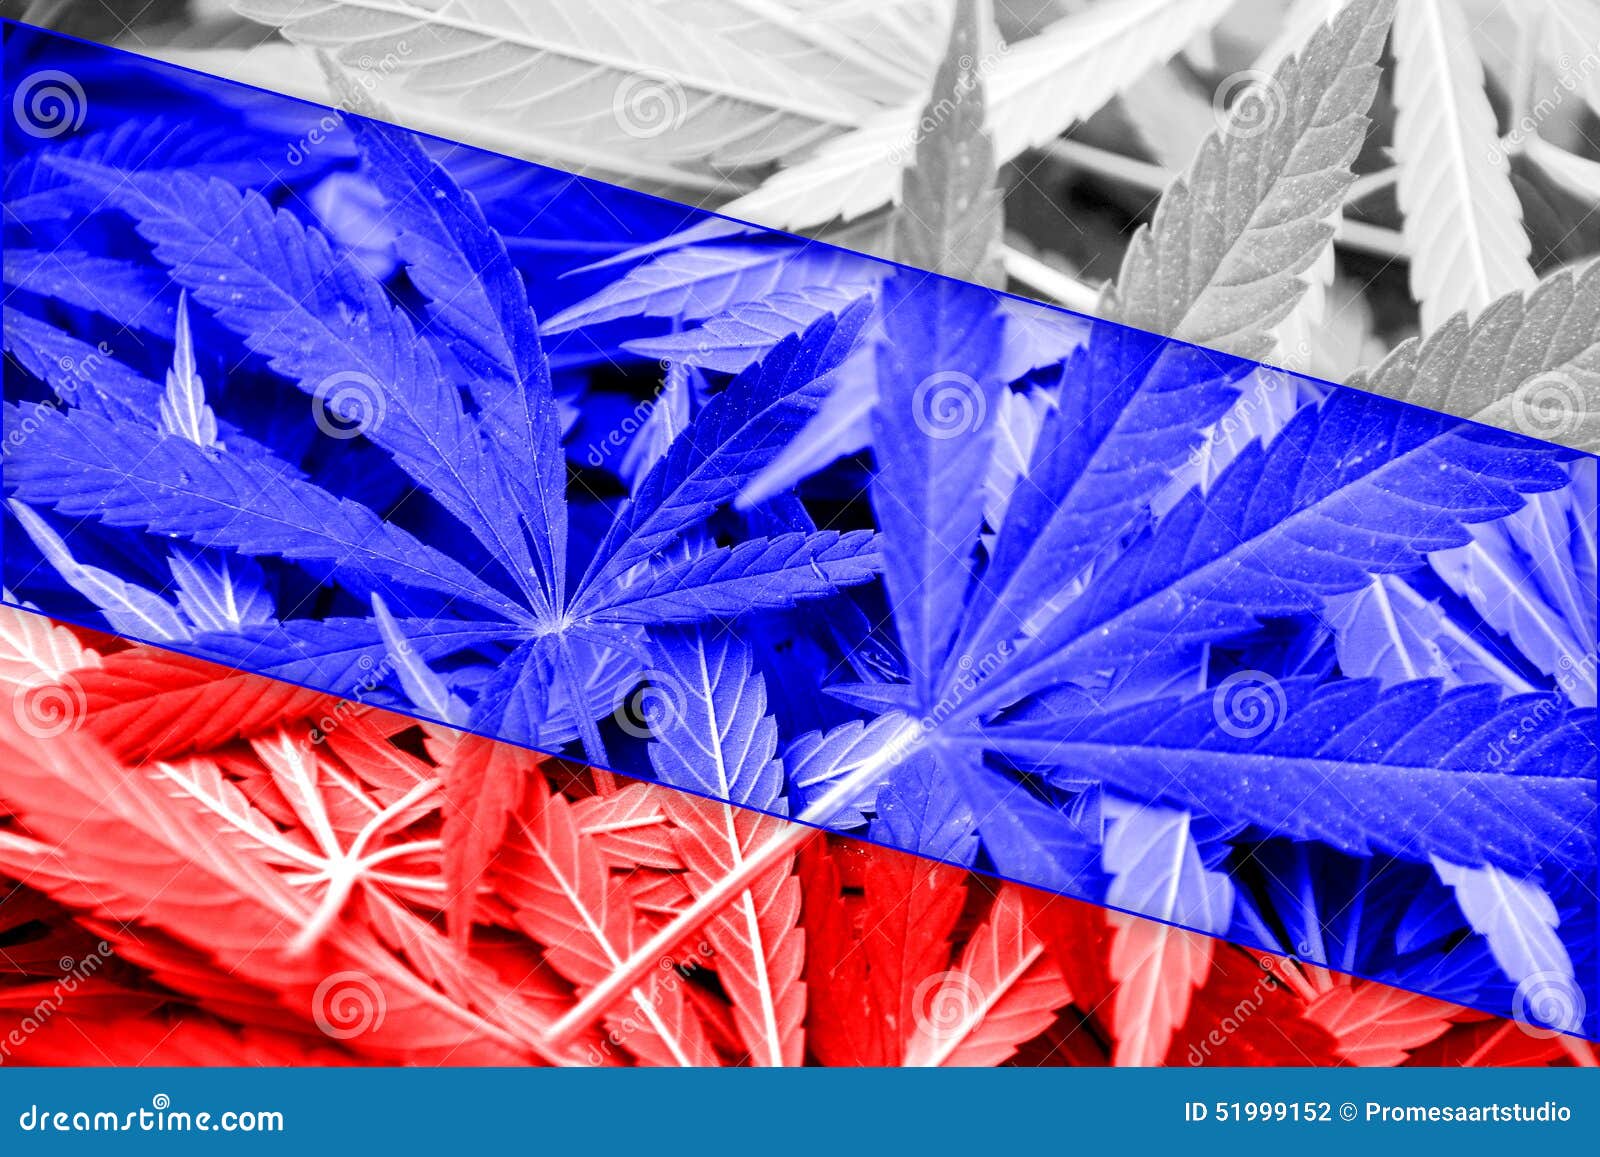 День марихуаны в россии расточки конопли